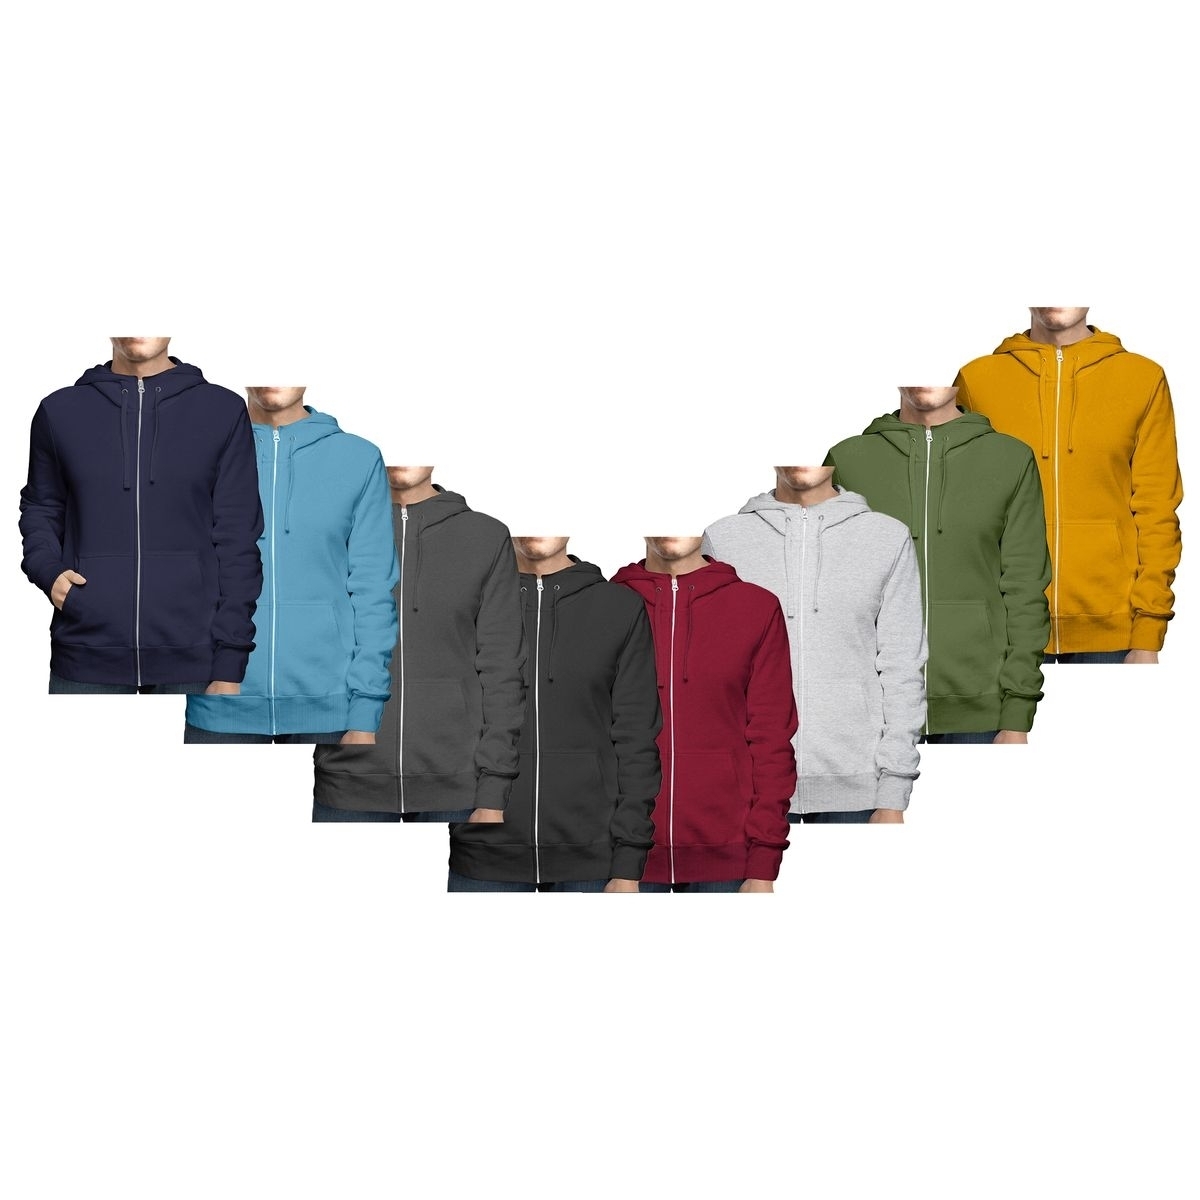 Men's Winter Warm Cozy Full Zip-Up Fleece Lined Soft Hoodie Sweatshirt - Navy, X-large